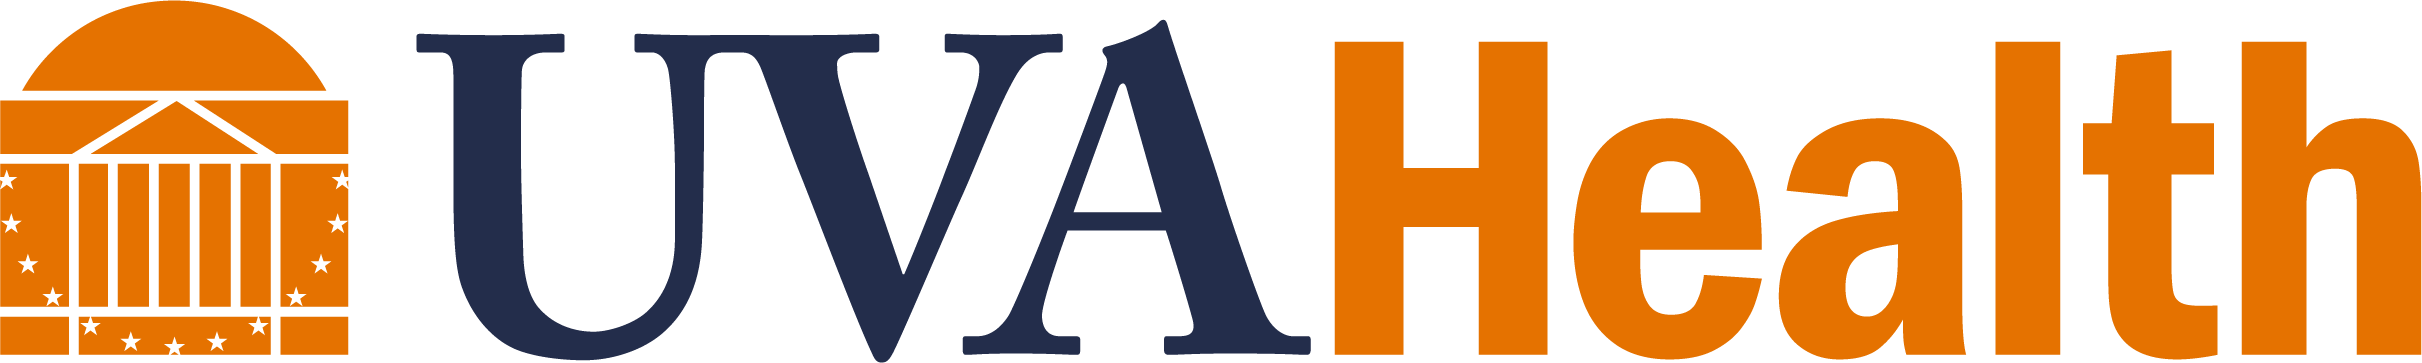 UVA Health logo.